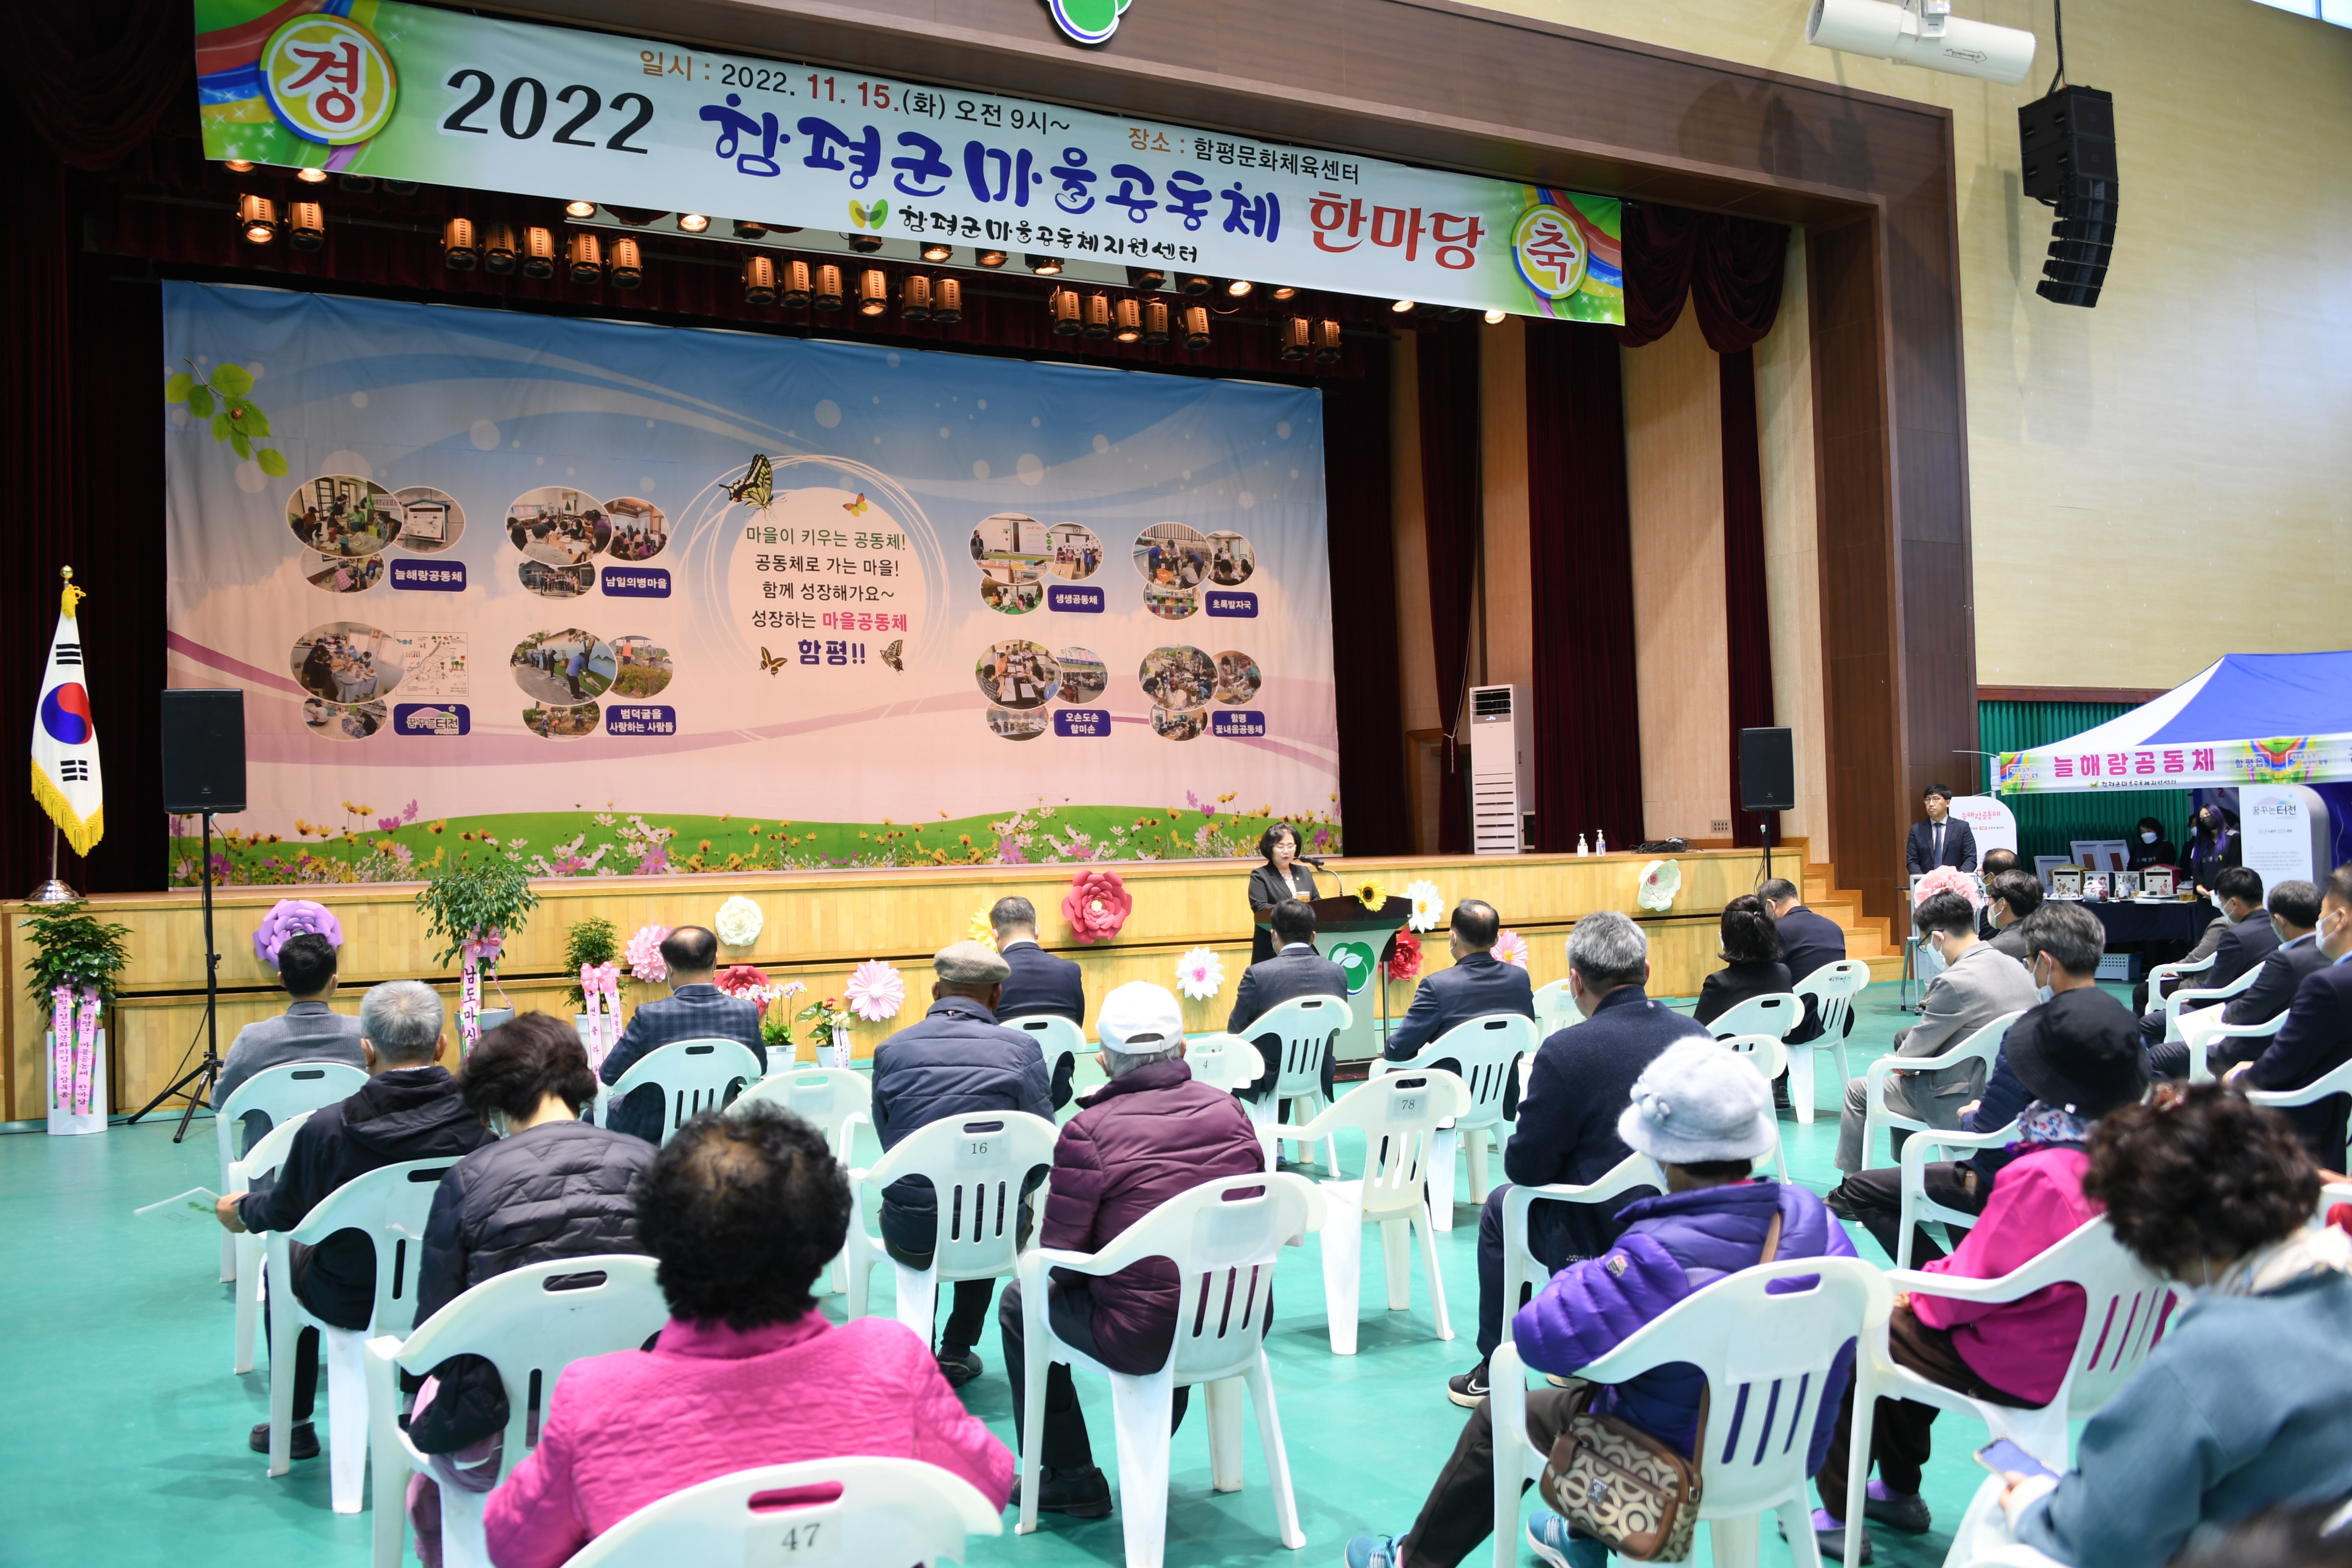 2022년 함평군 마을공동체 한마당 행사(2022.11.15.)8